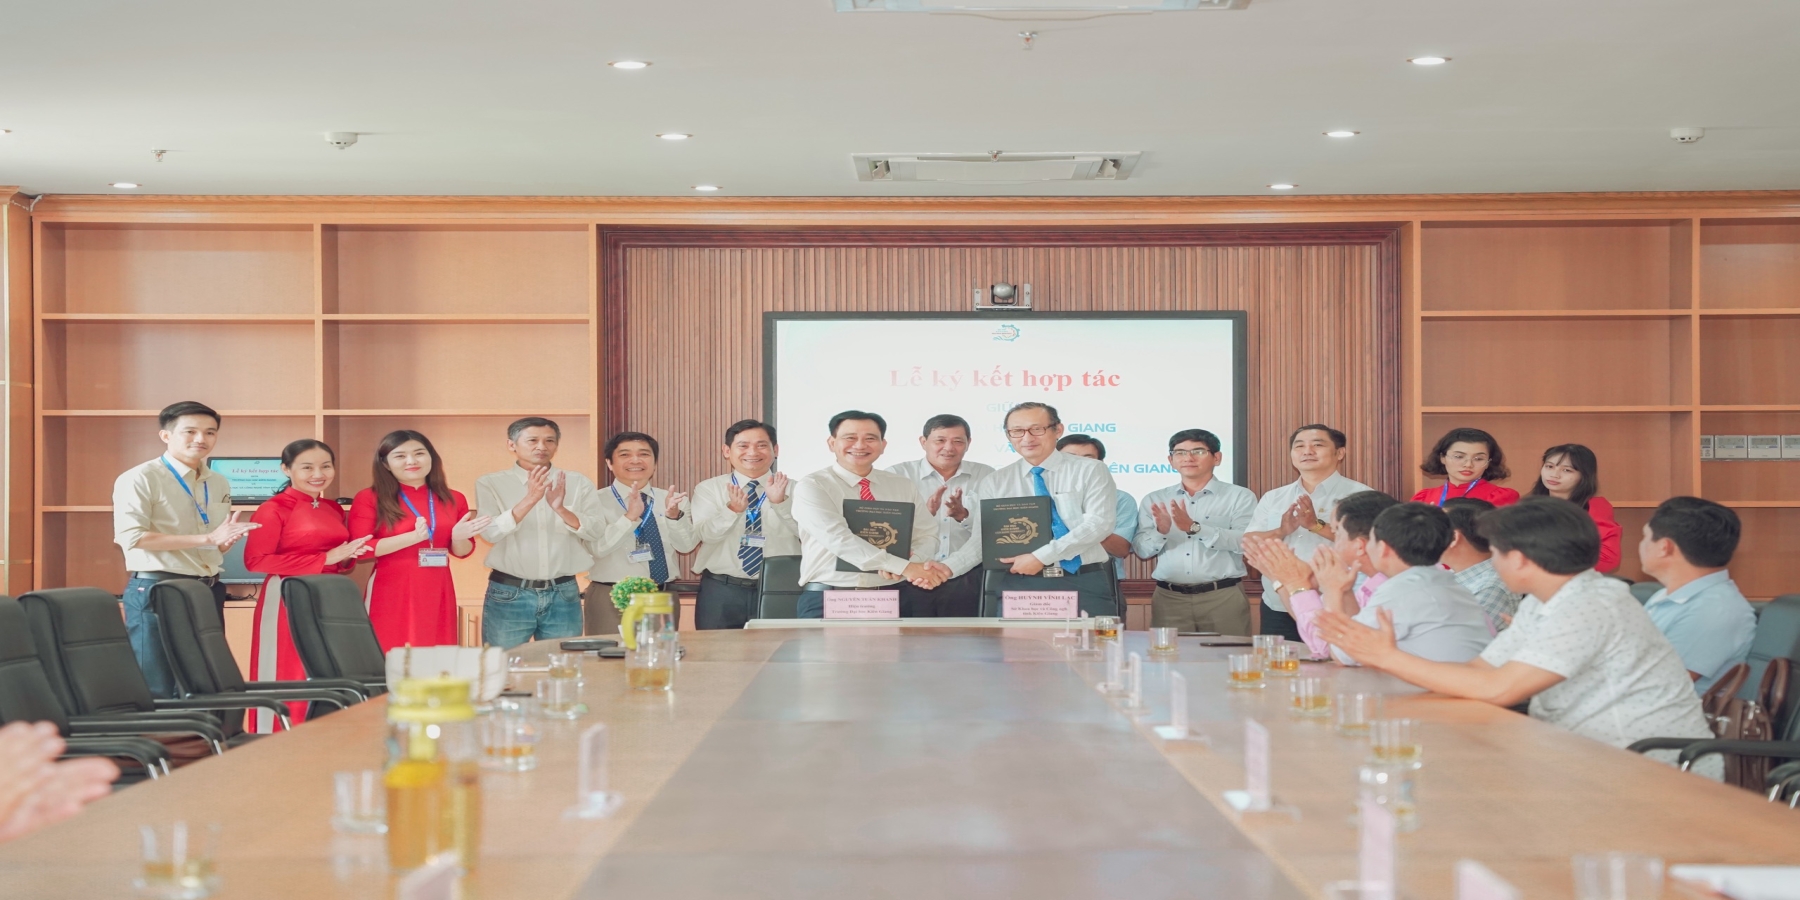 Trường Đại học Kiên Giang và Sở Khoa học & Công nghệ tỉnh Kiên Giang ký kết hợp tác về khoa học, công nghệ, khởi nghiệp đổi mới sáng tạo